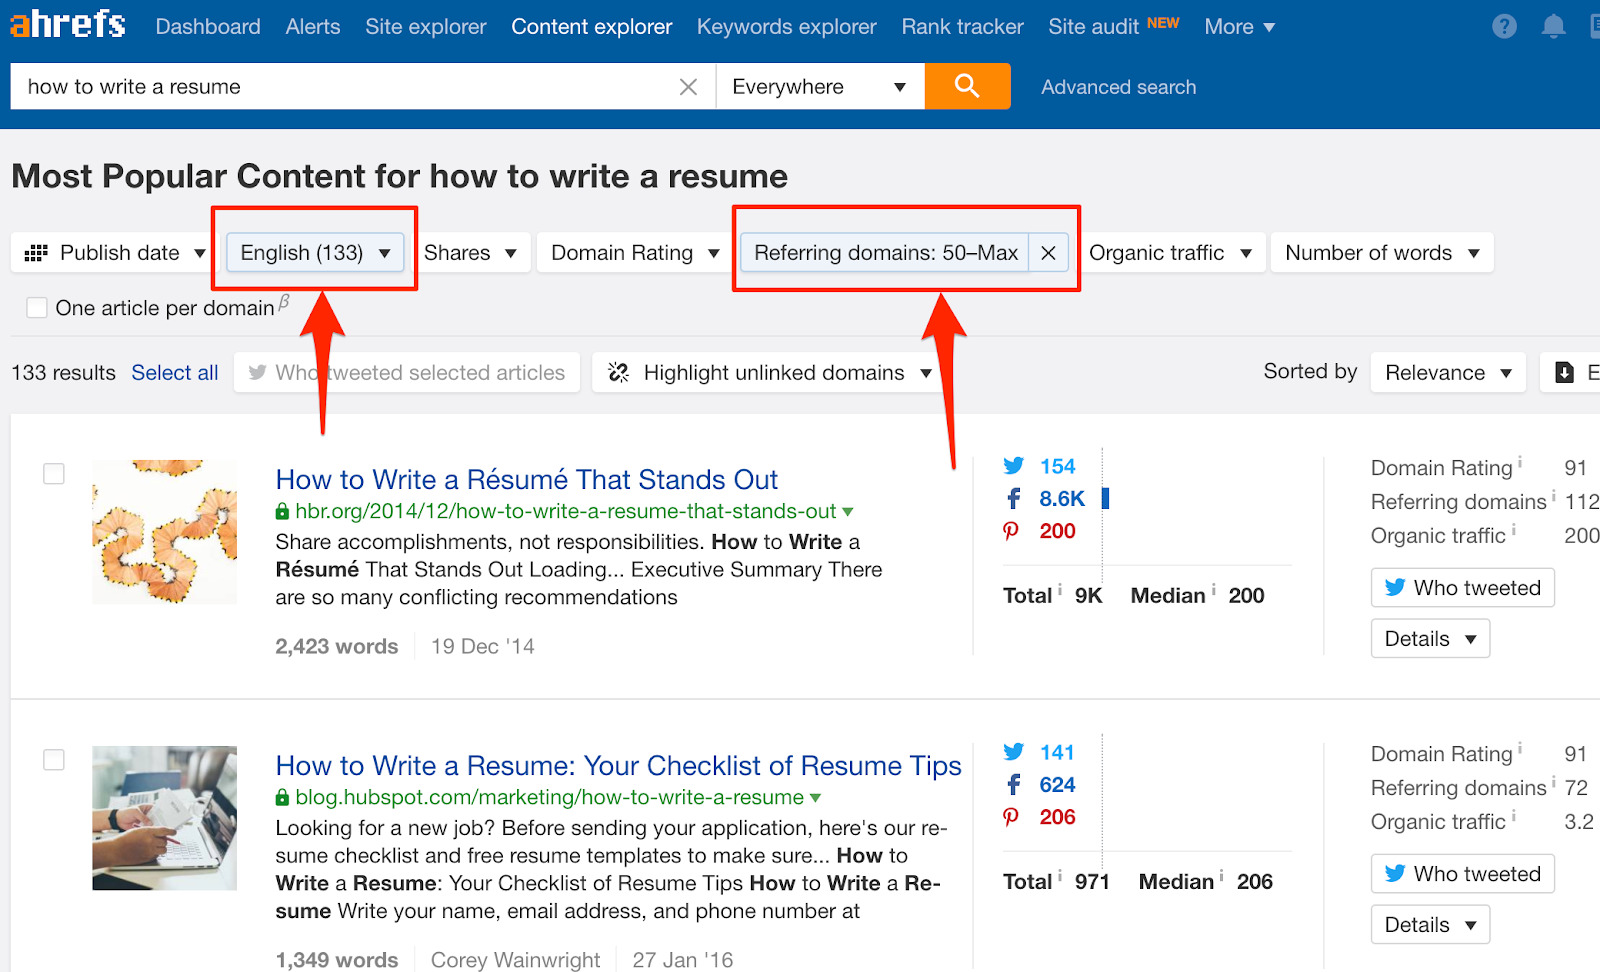 how to write a resume content explorer 1